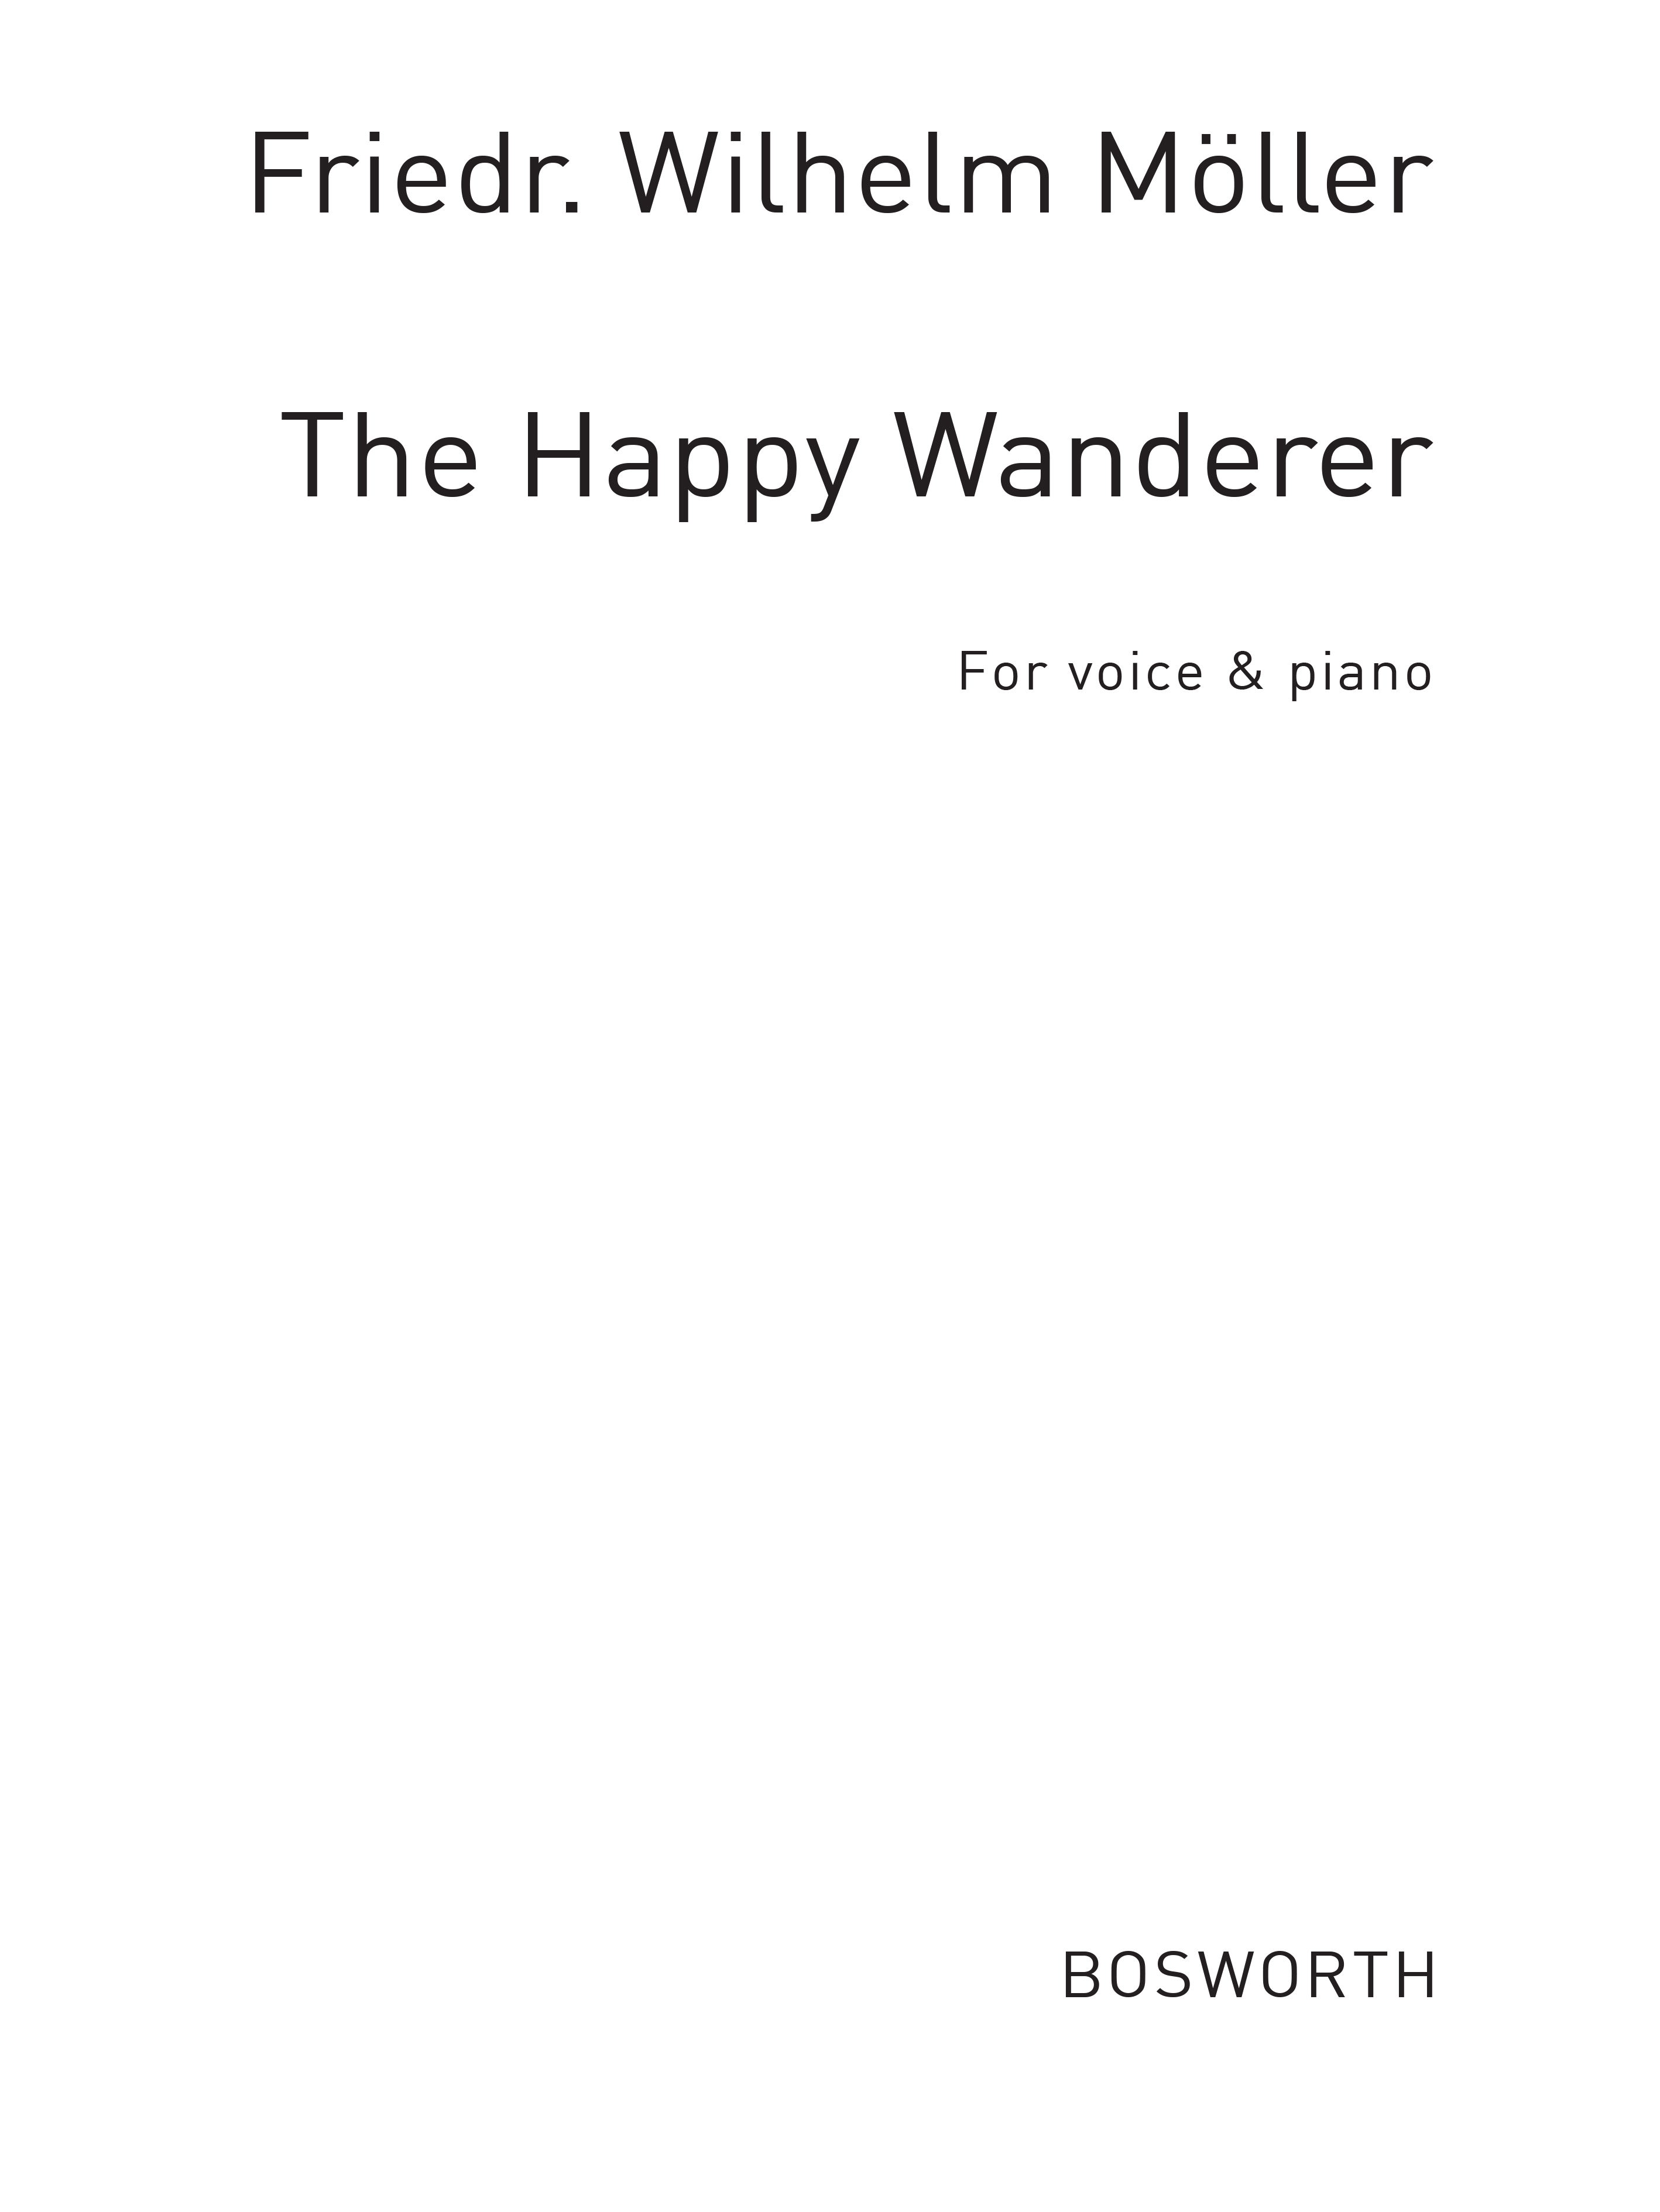 Moller, F W Happy Wanderer Vce/Pf